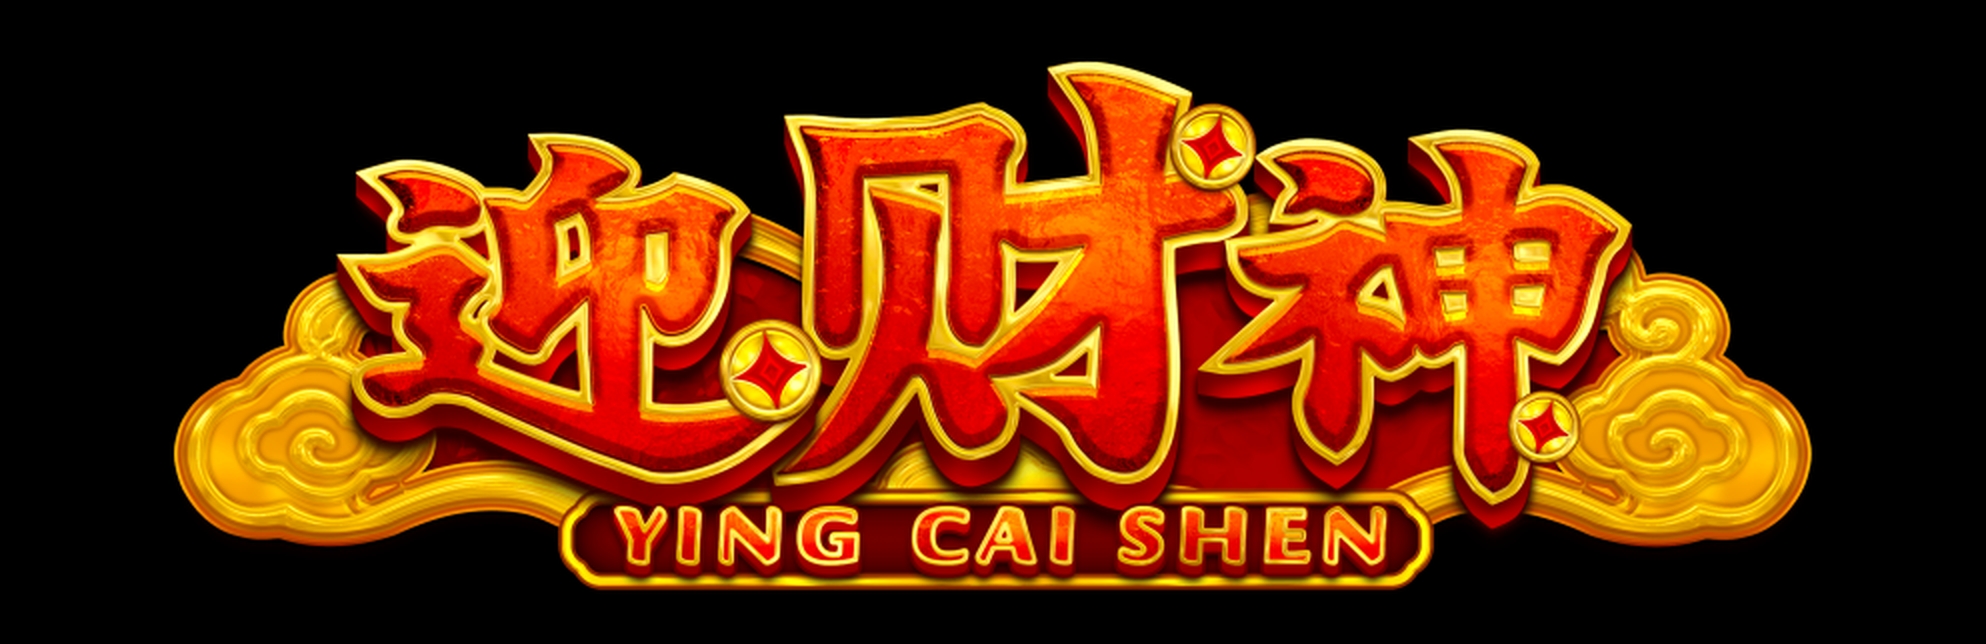 Ying Cai Shen demo